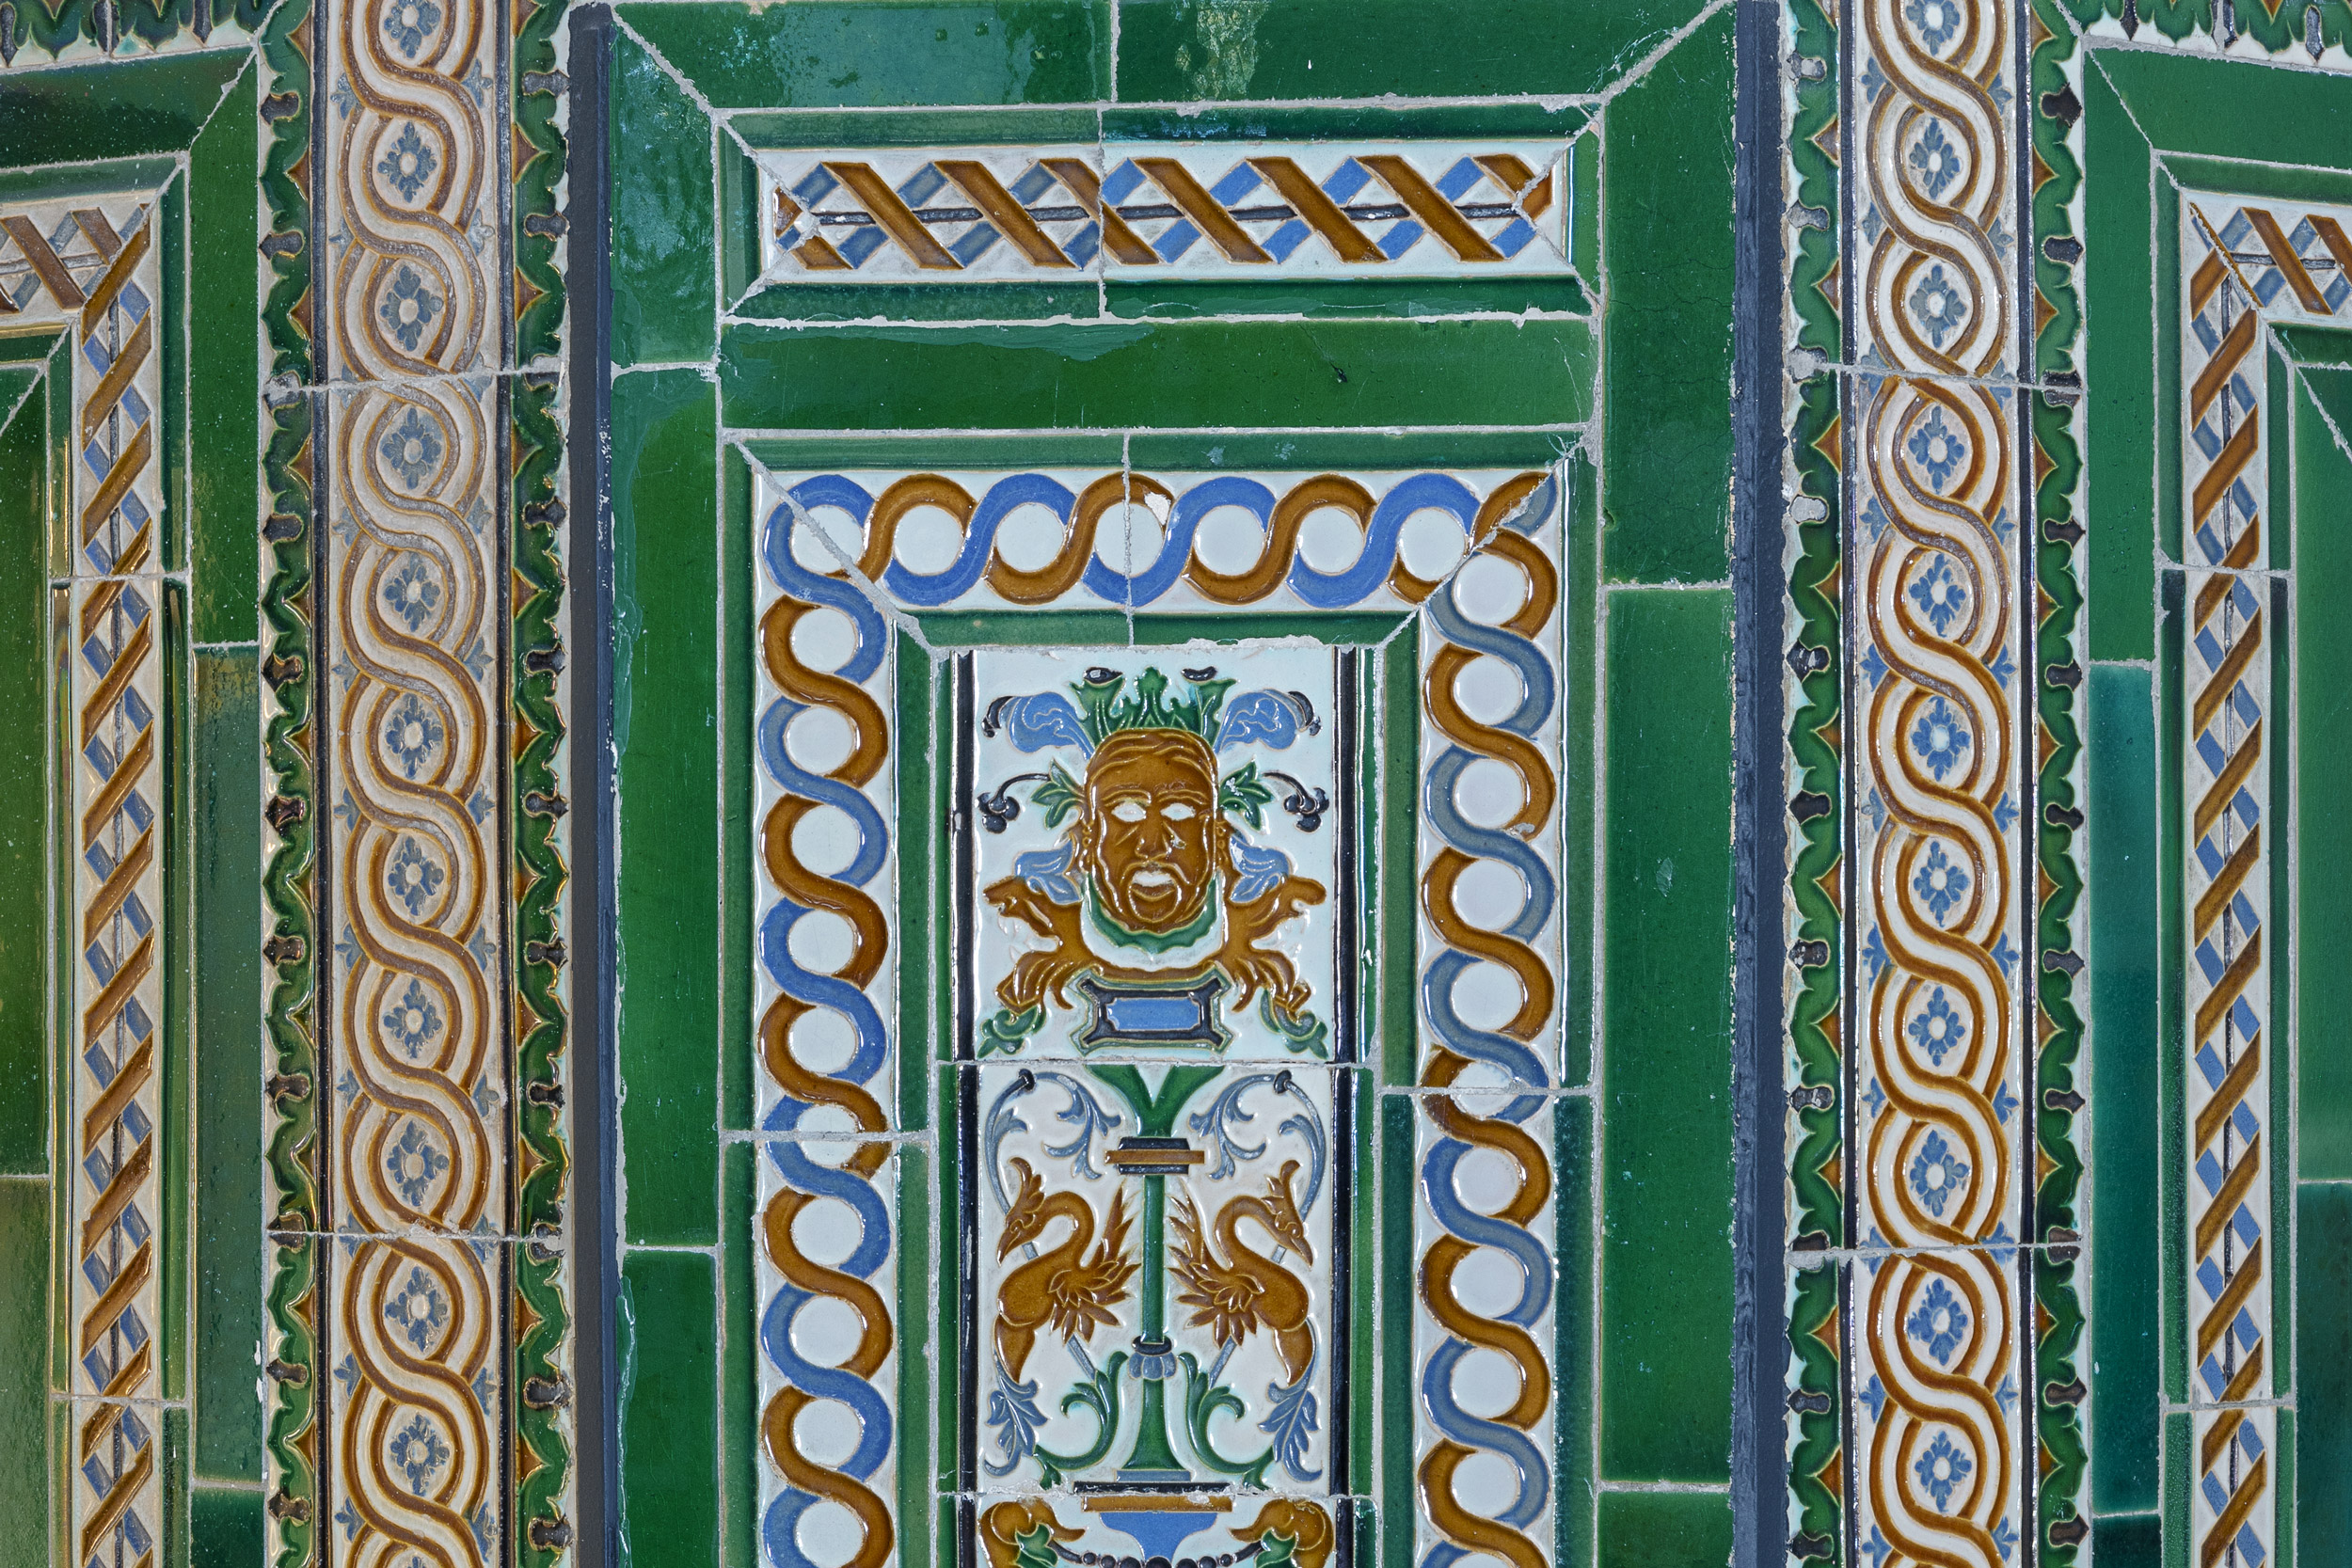 Fotografía de panel de decoración cerámica en las escaleras interiores.